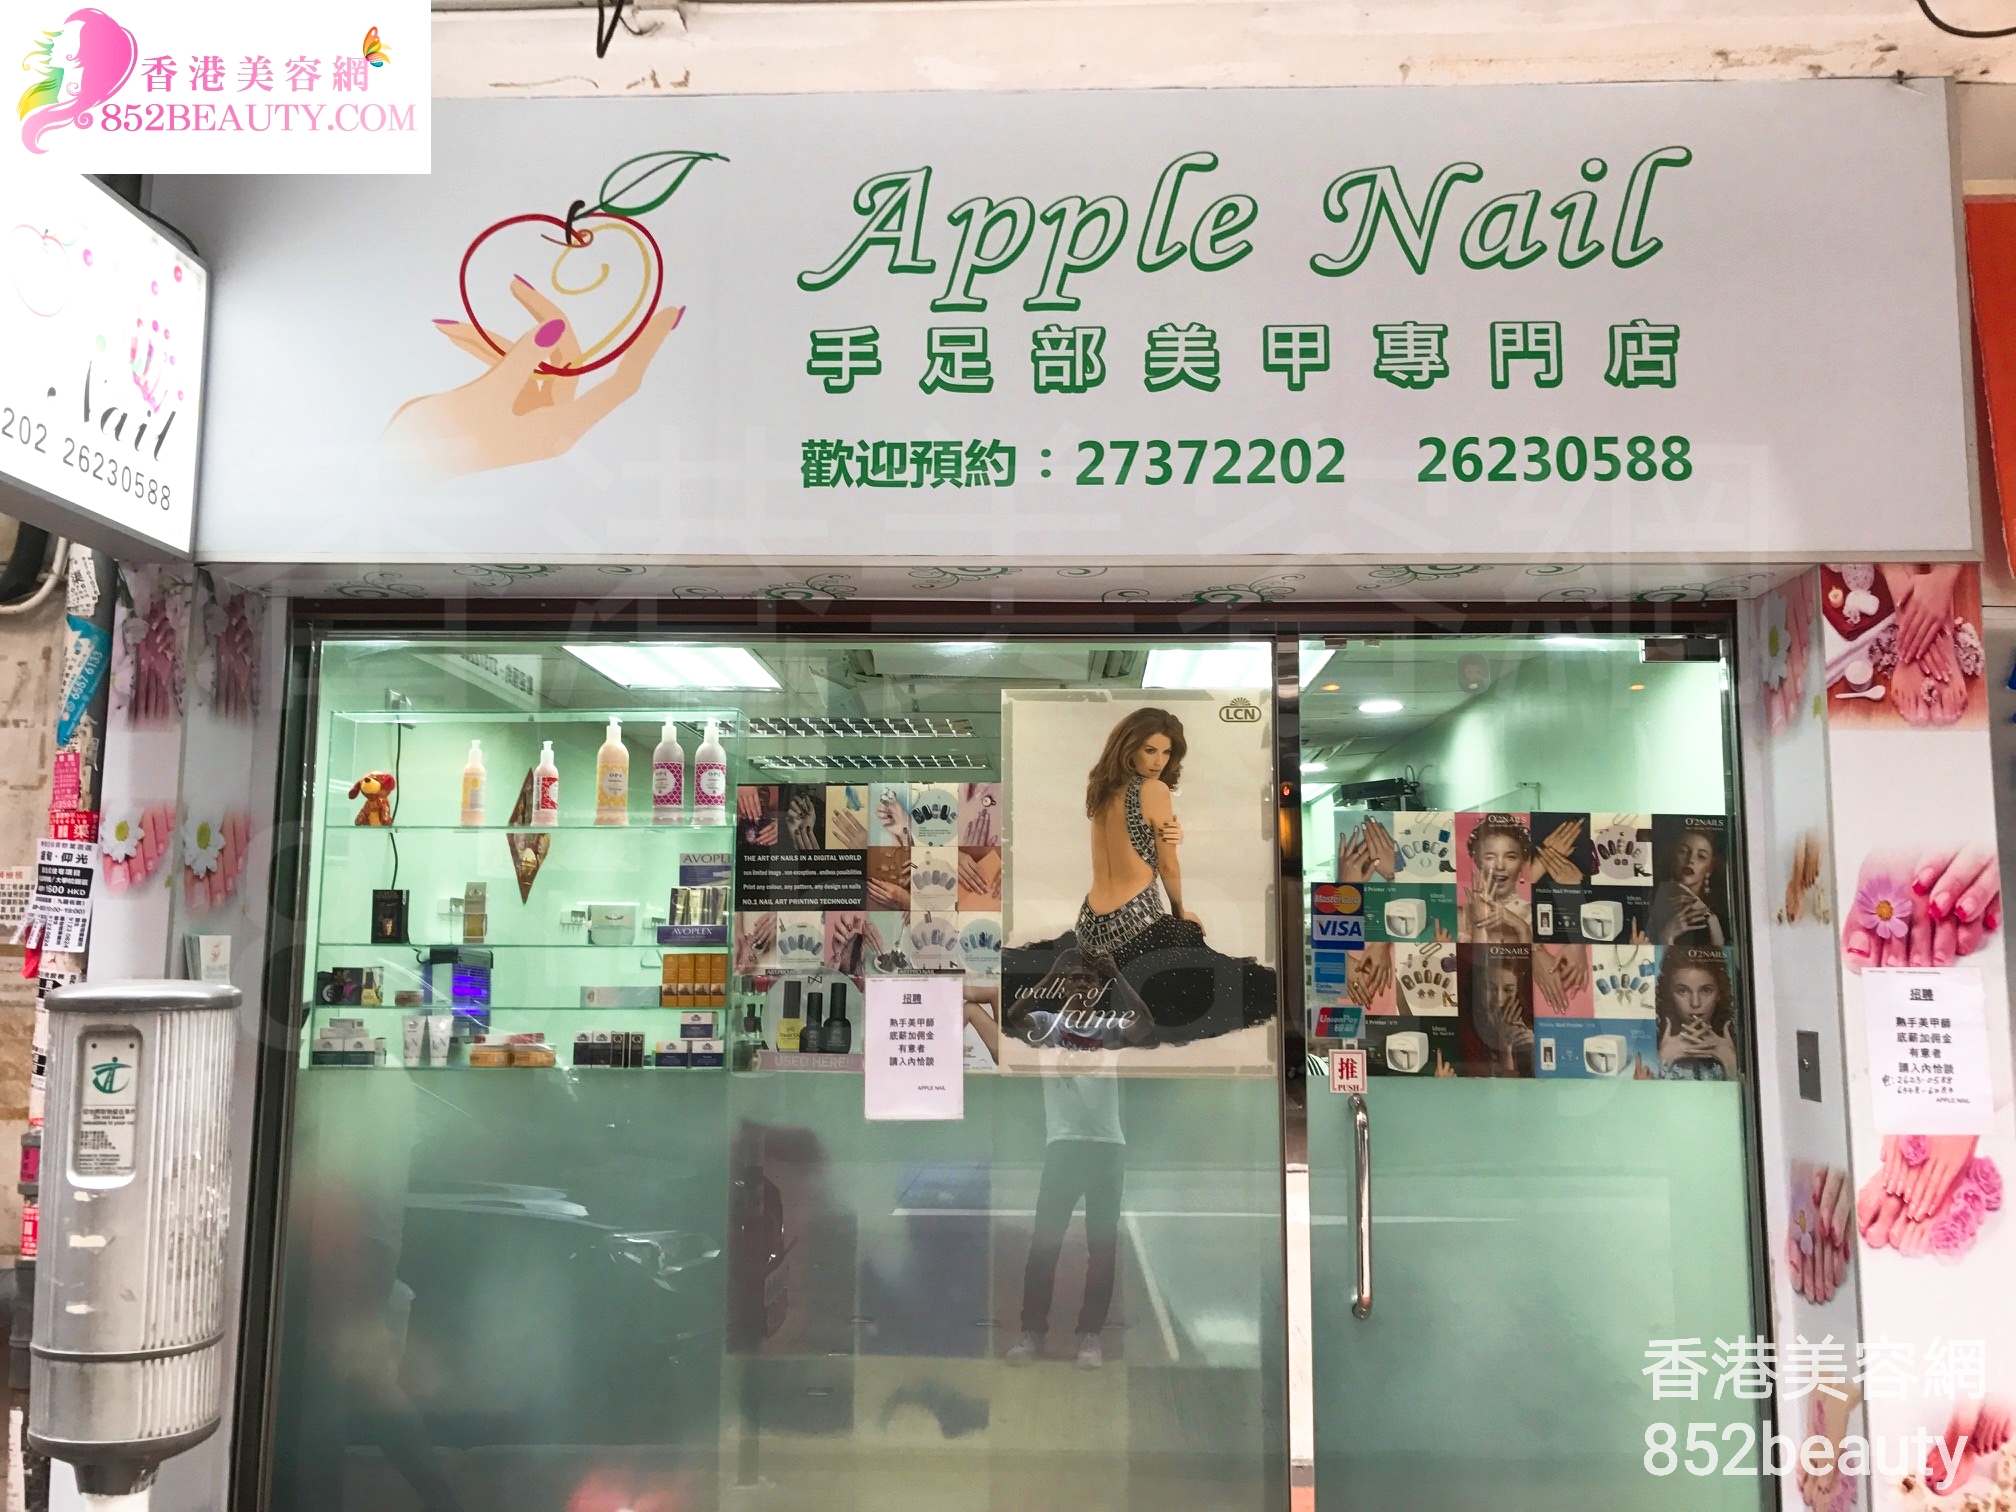 香港美容網 Hong Kong Beauty Salon 美容院 / 美容師: Apple Nail 手足部美甲專門店